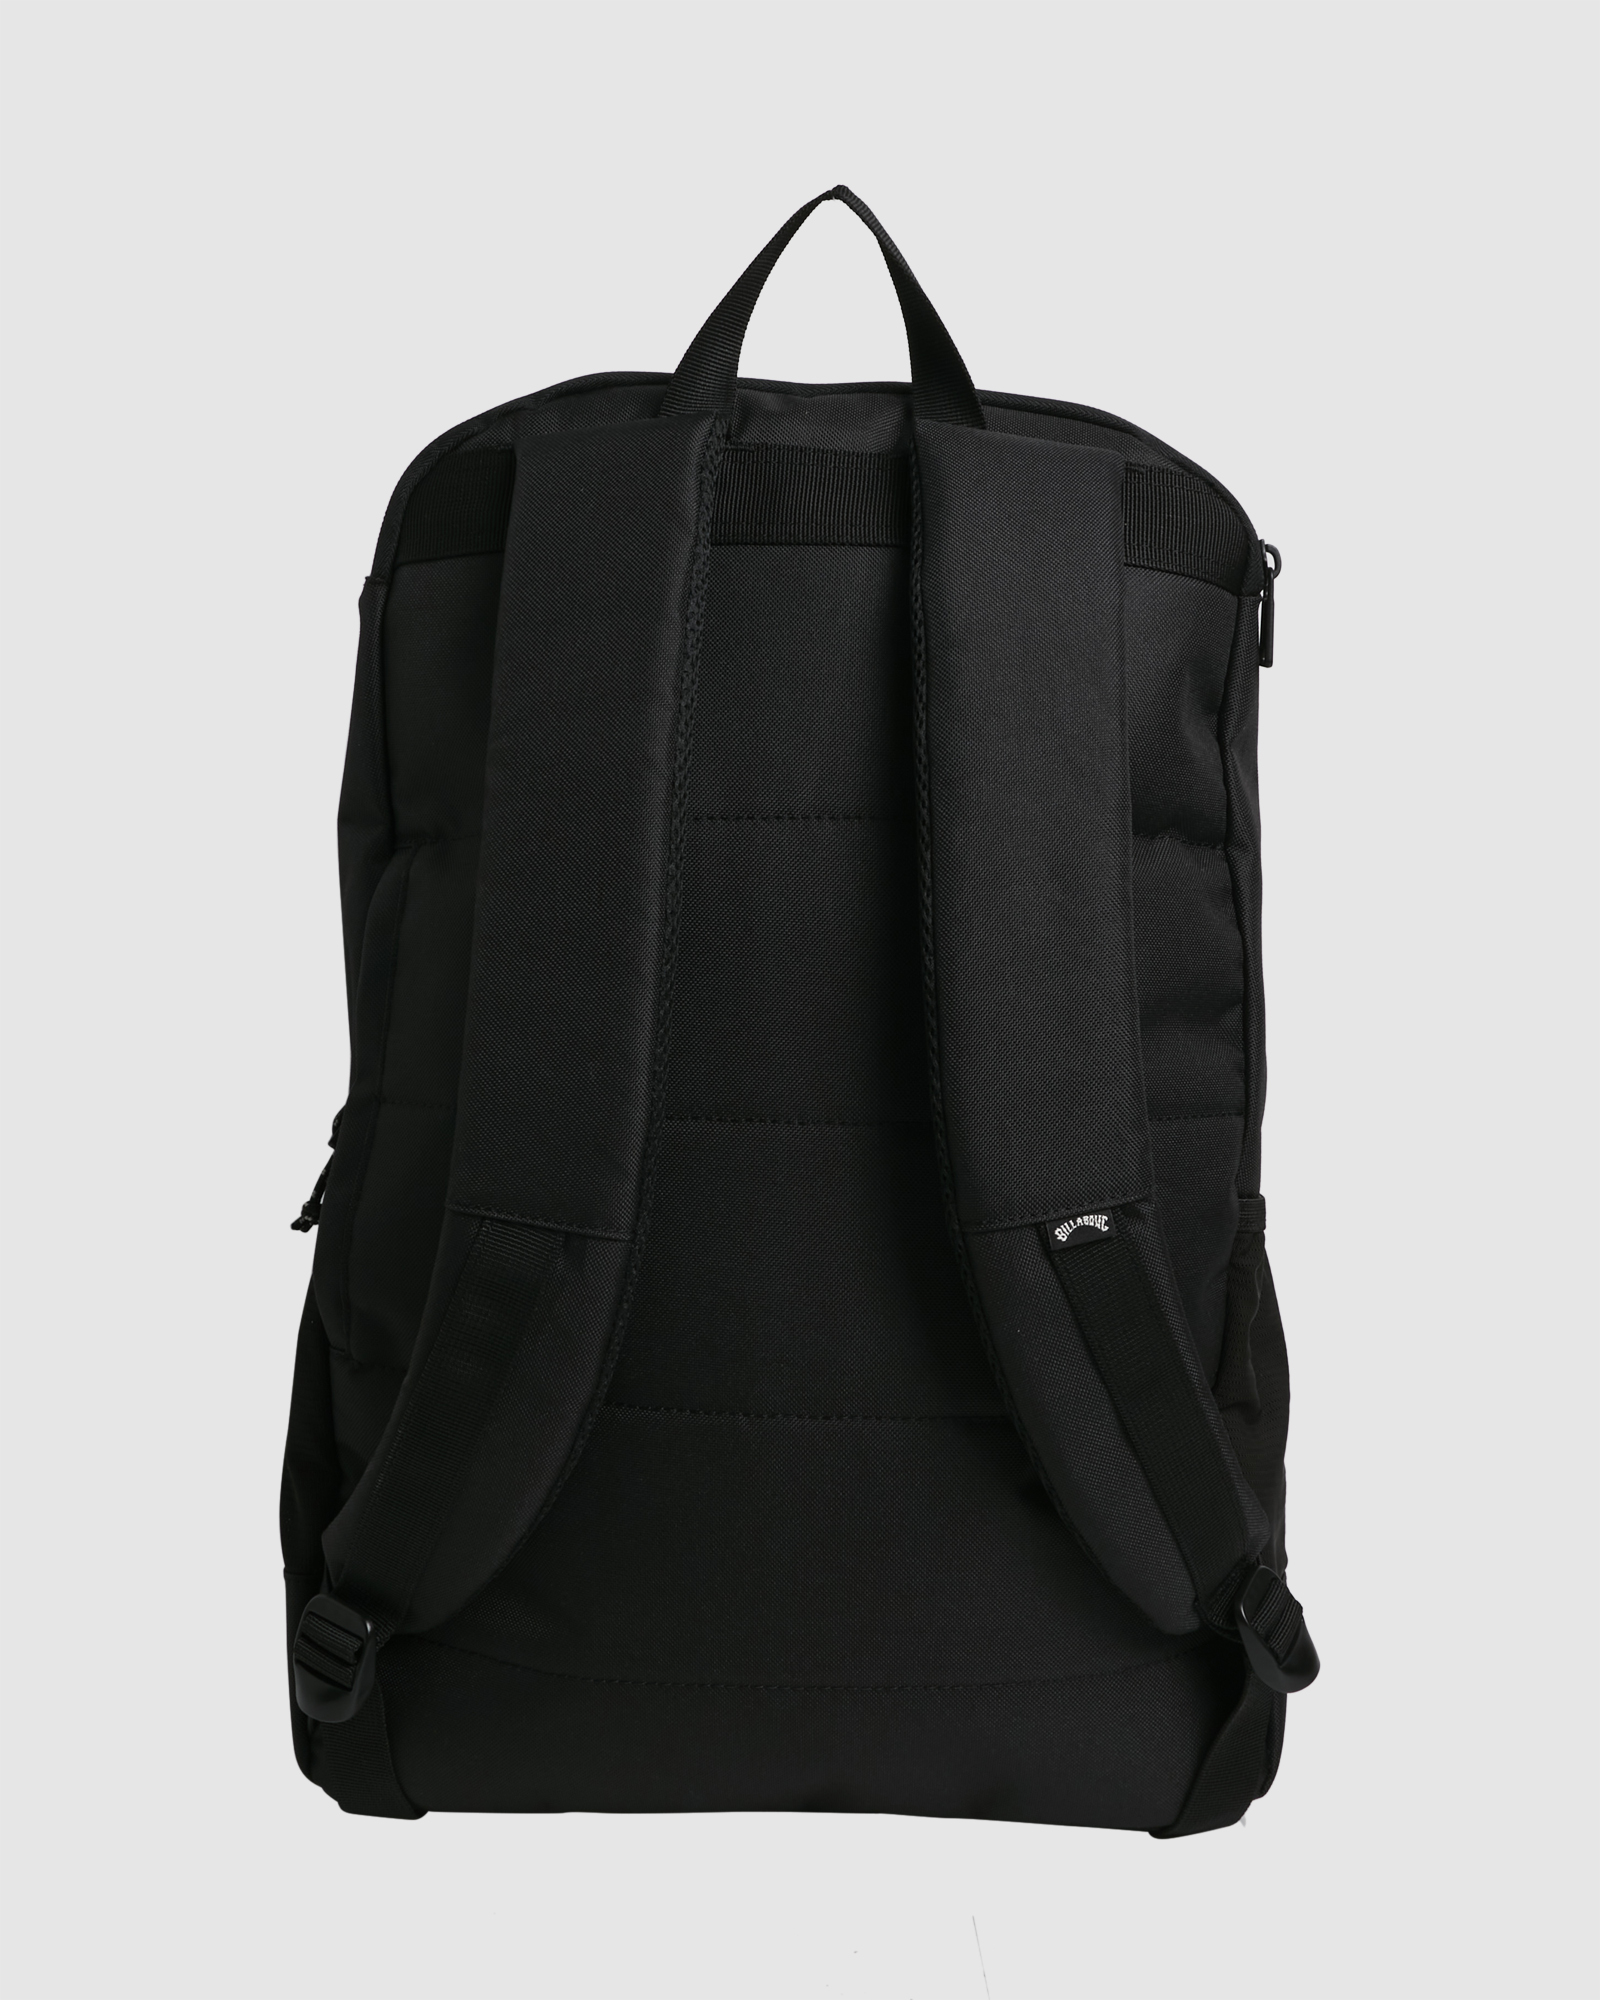 Billabong Command Backpack - Dark Char | SurfStitch